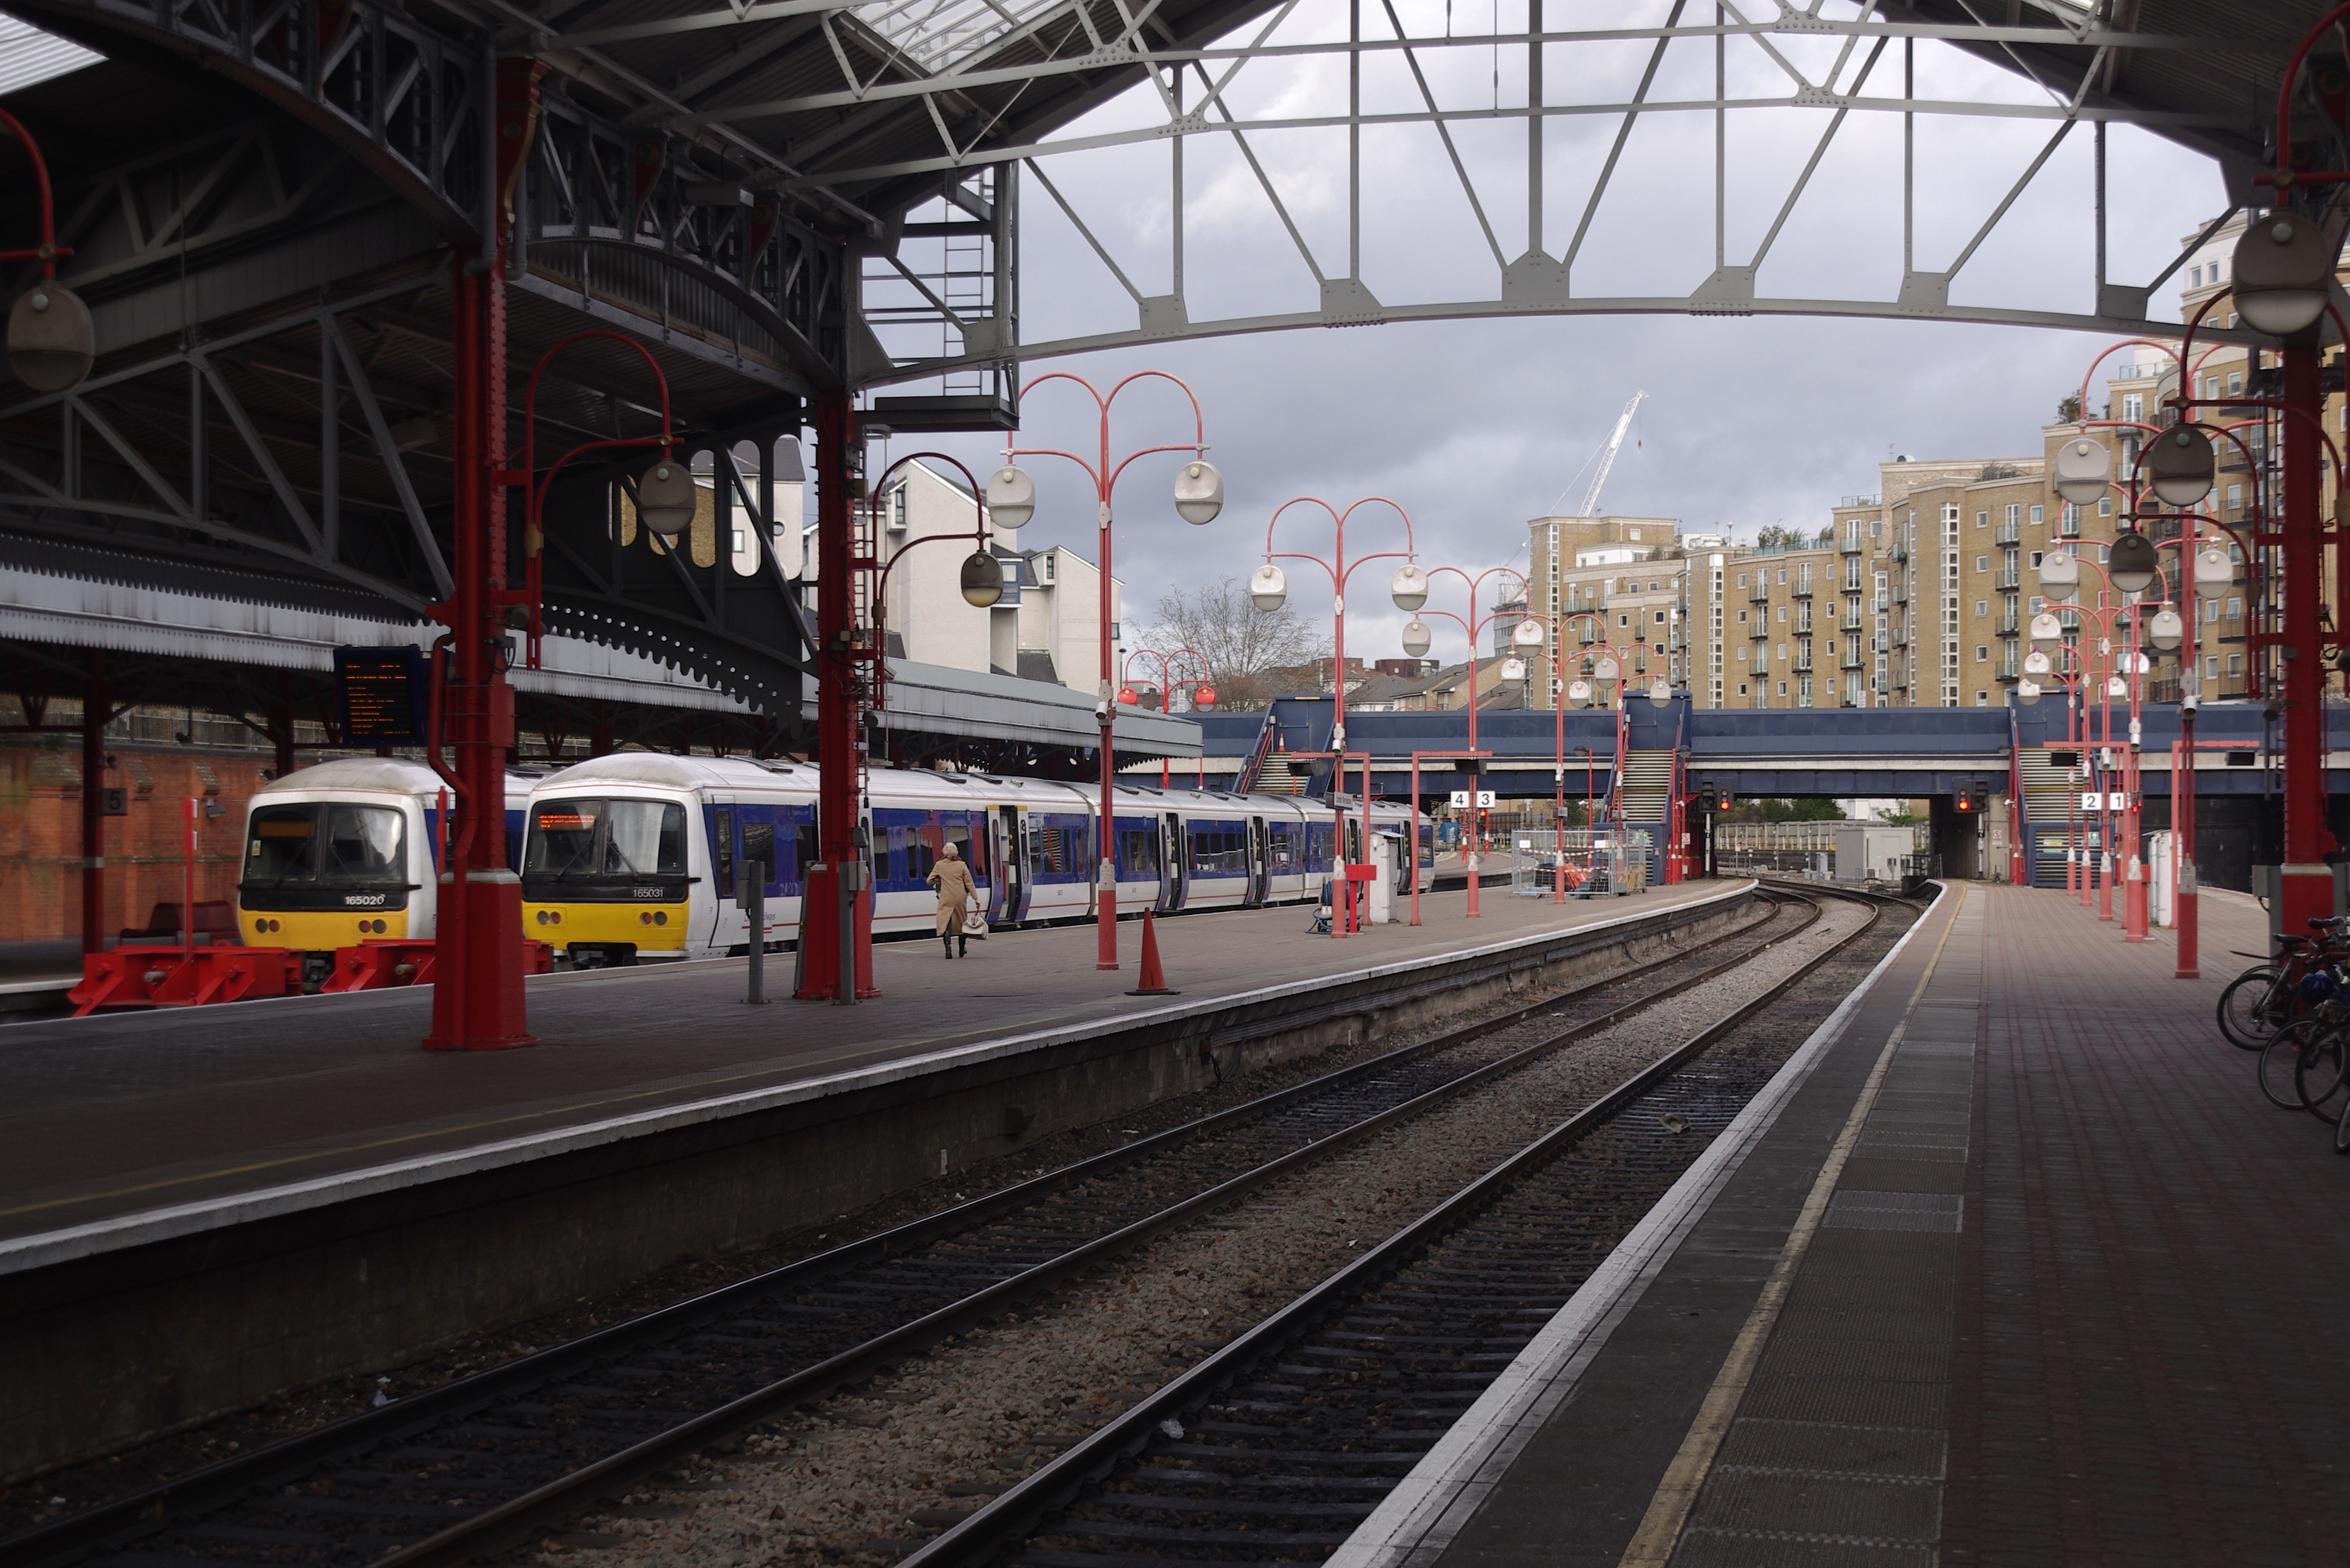 Marylebone station MMB 26 165020 165031